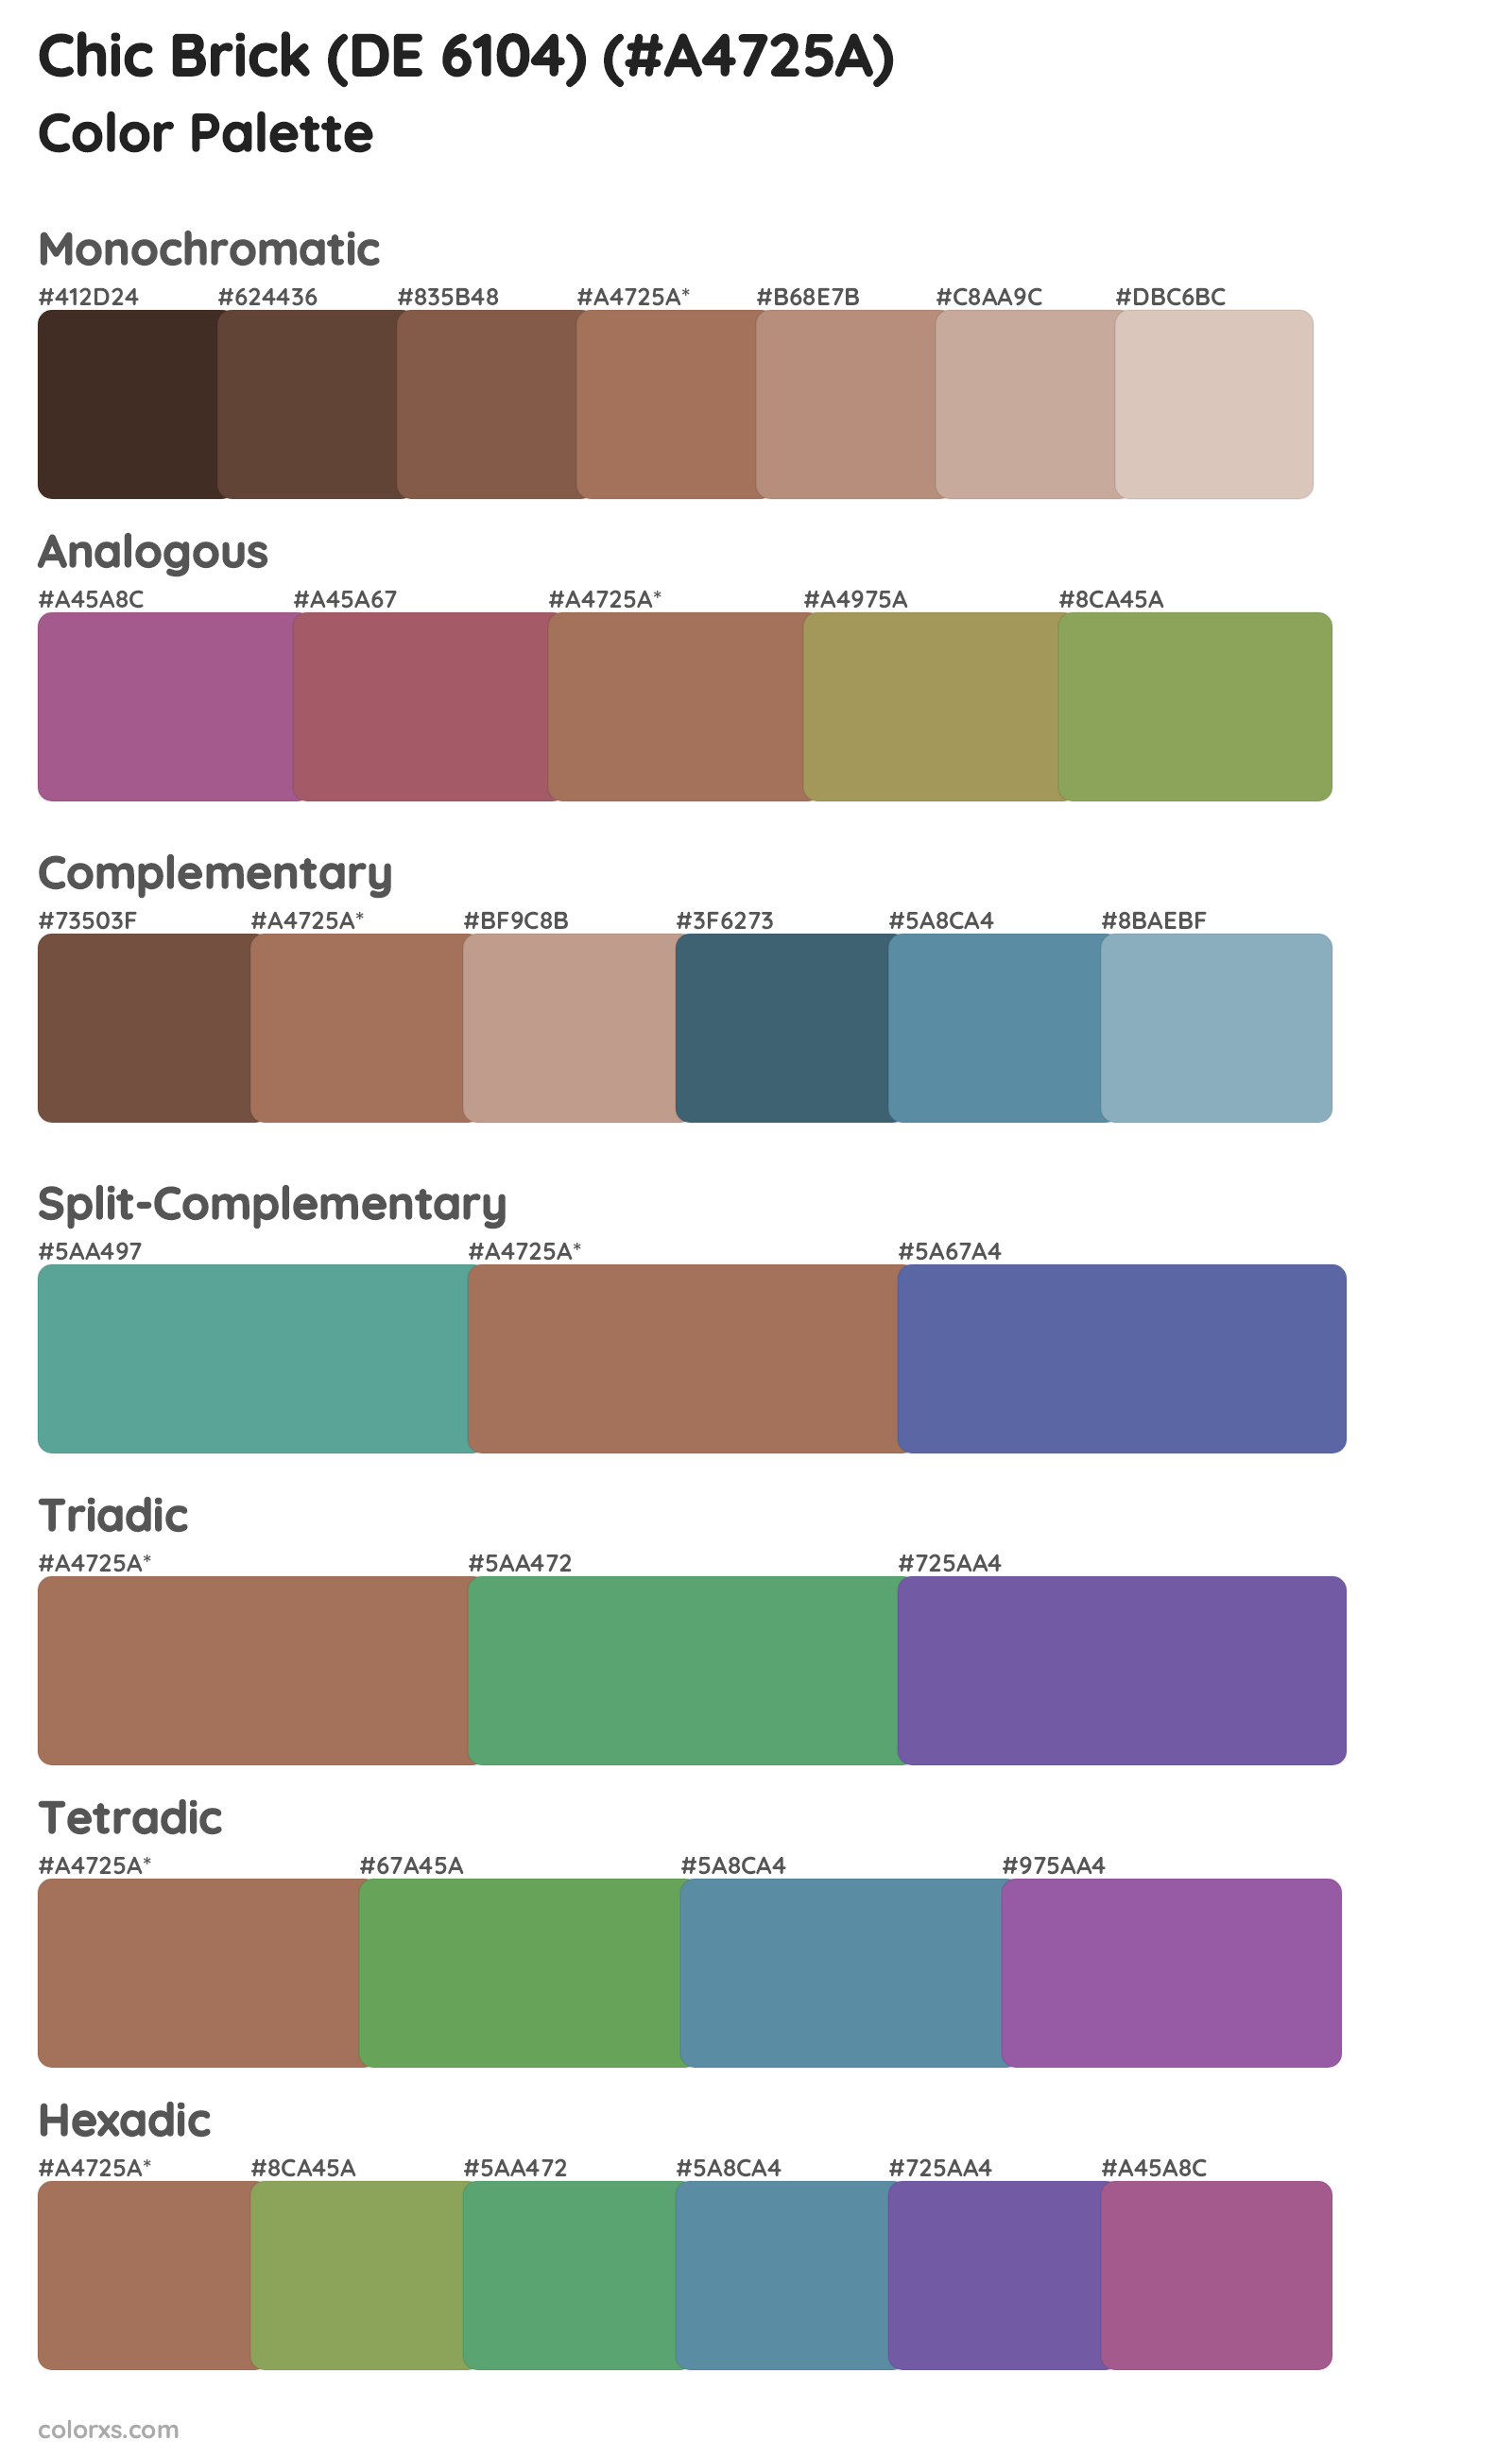 Chic Brick (DE 6104) Color Scheme Palettes